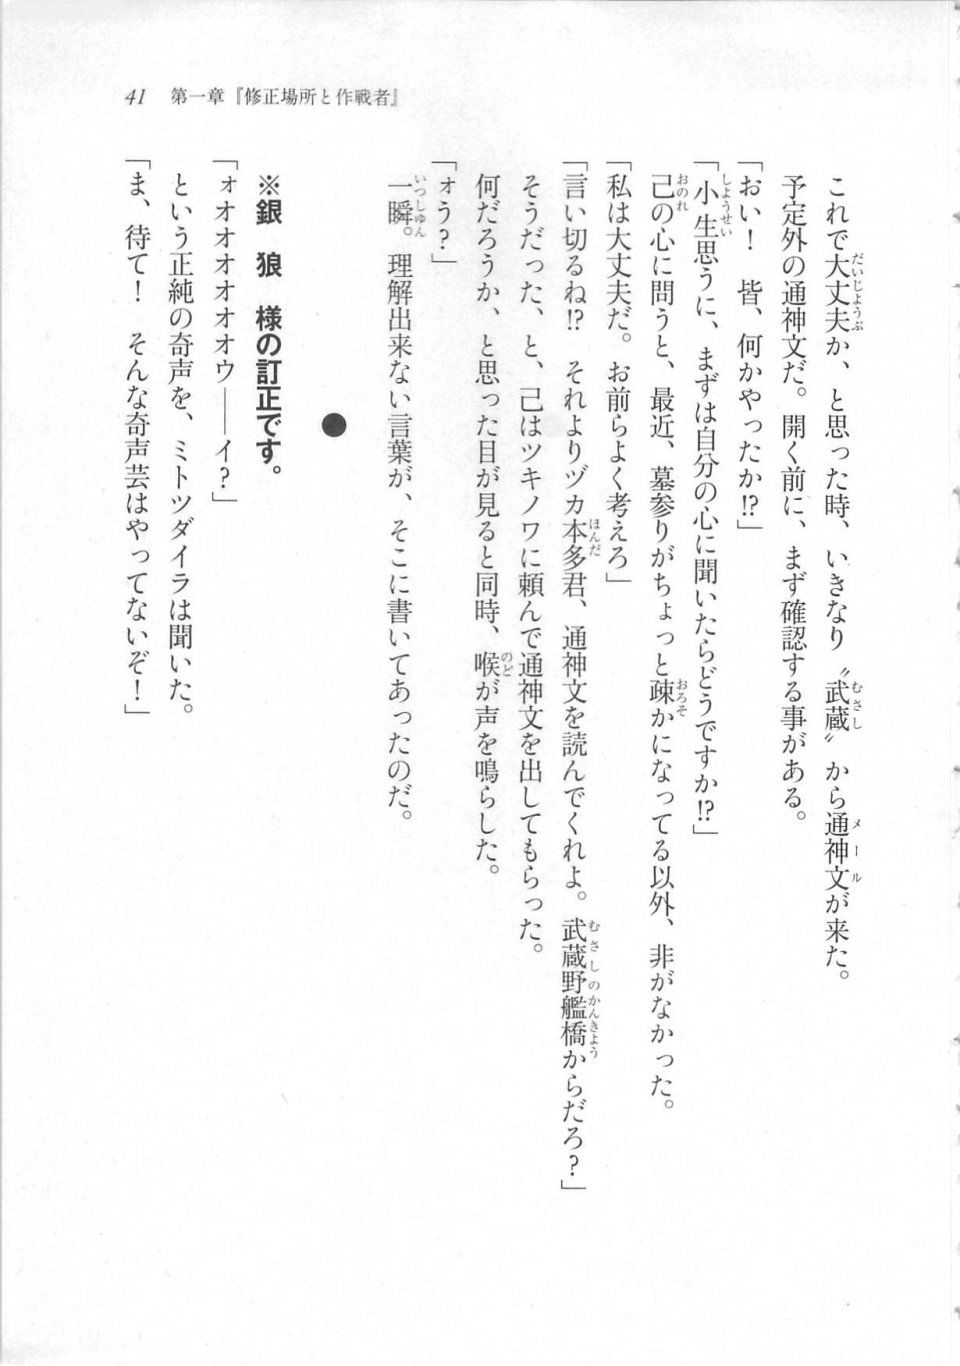 Kyoukai Senjou no Horizon LN Sidestory Vol 3 - Photo #45